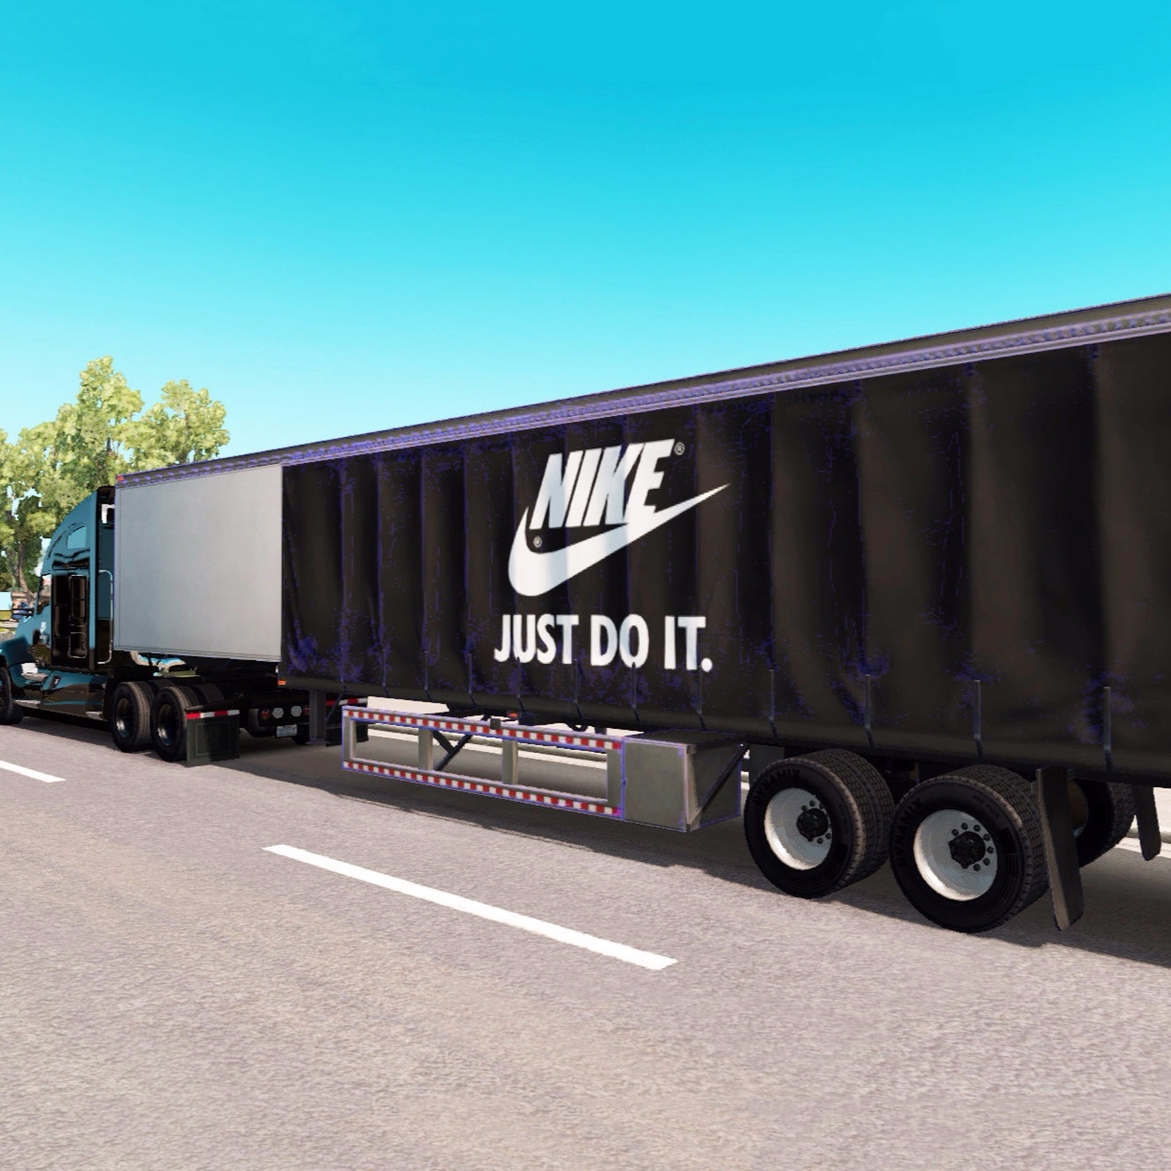 一輛裝滿 Nike 球鞋的運貨卡車被洗劫一空